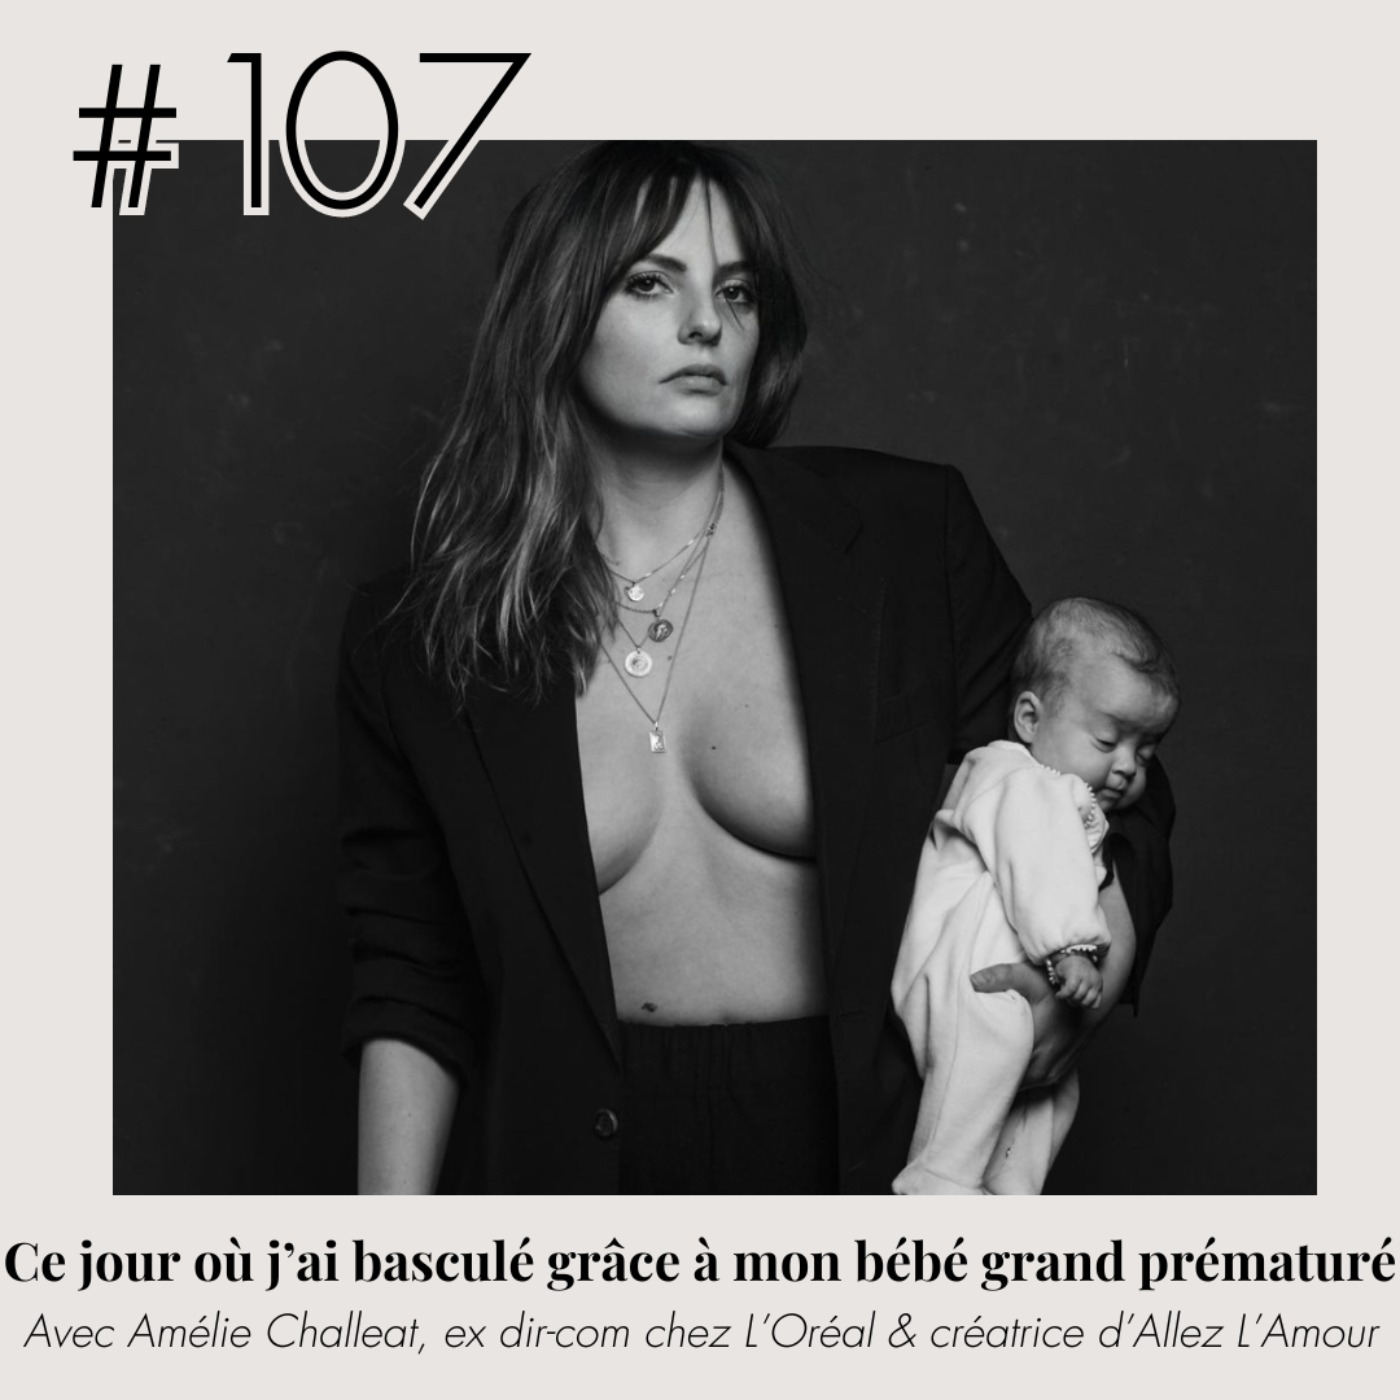 cover art for #107 - (Amélie Challeat) "Ce jour où j'ai basculé grâce à mon bébé grand prématuré"